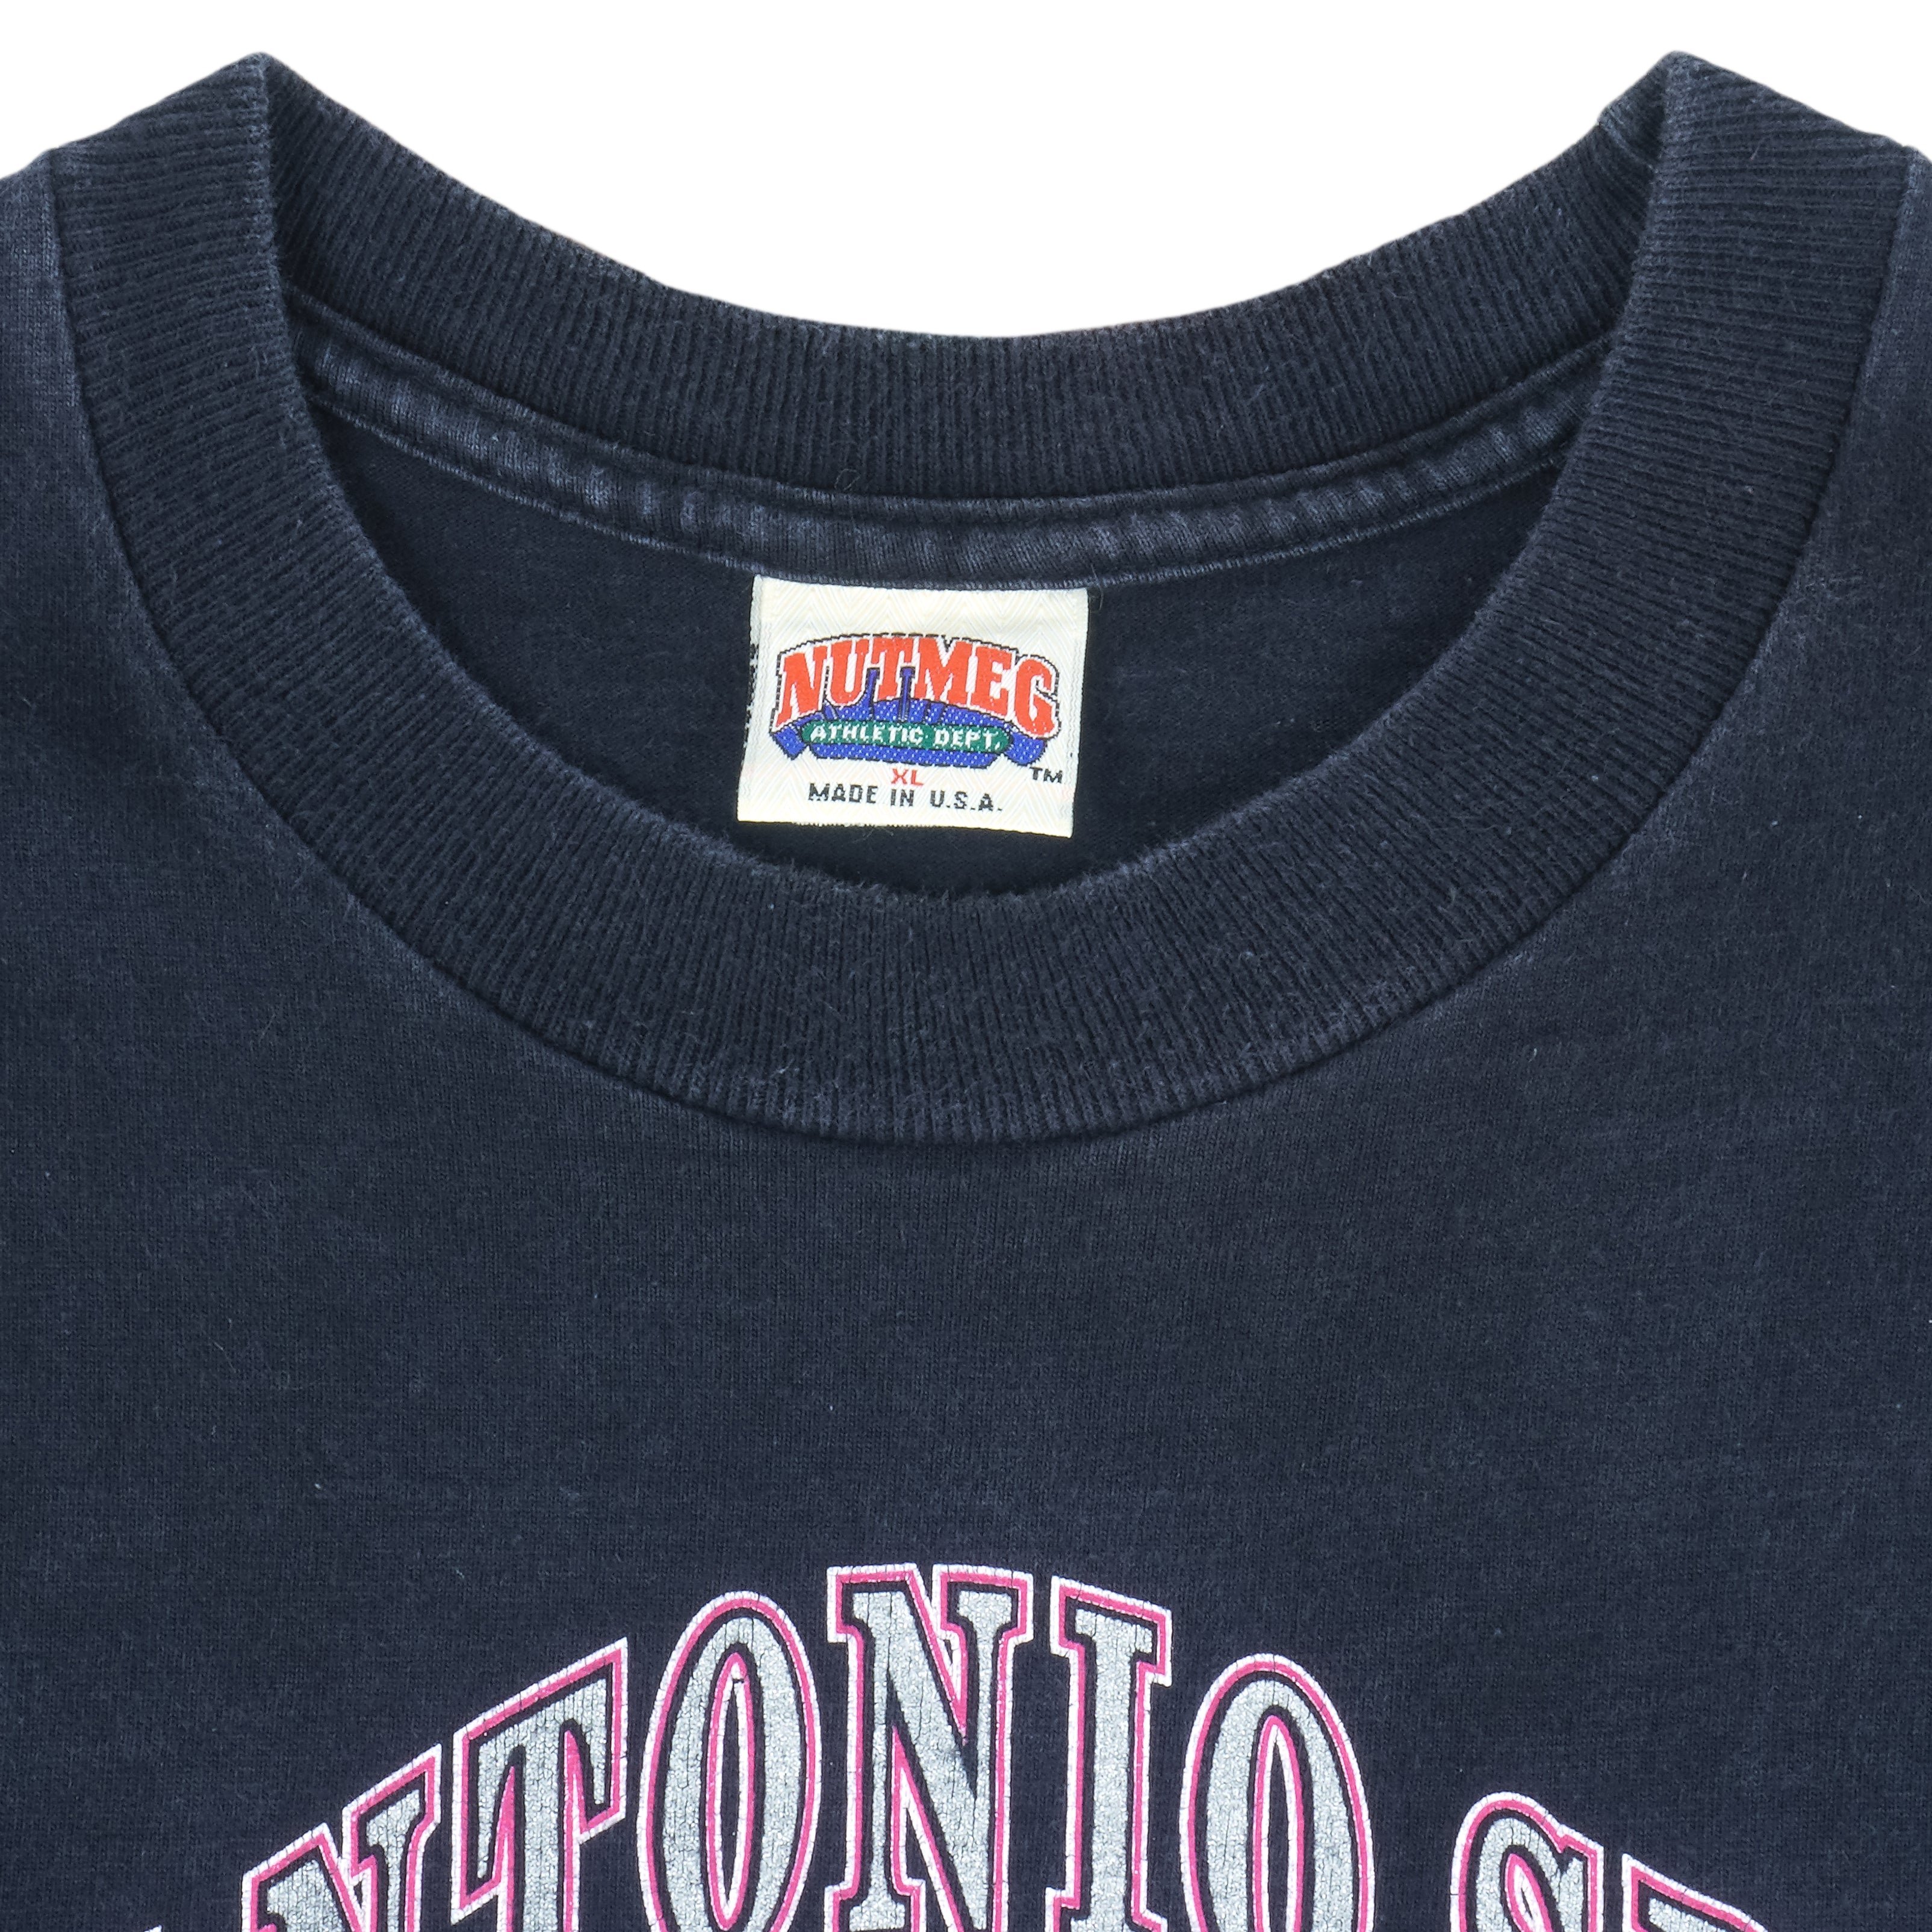 Vintage San Antonio Spurs Basketball Fan Sweatshirt Unisex Tee